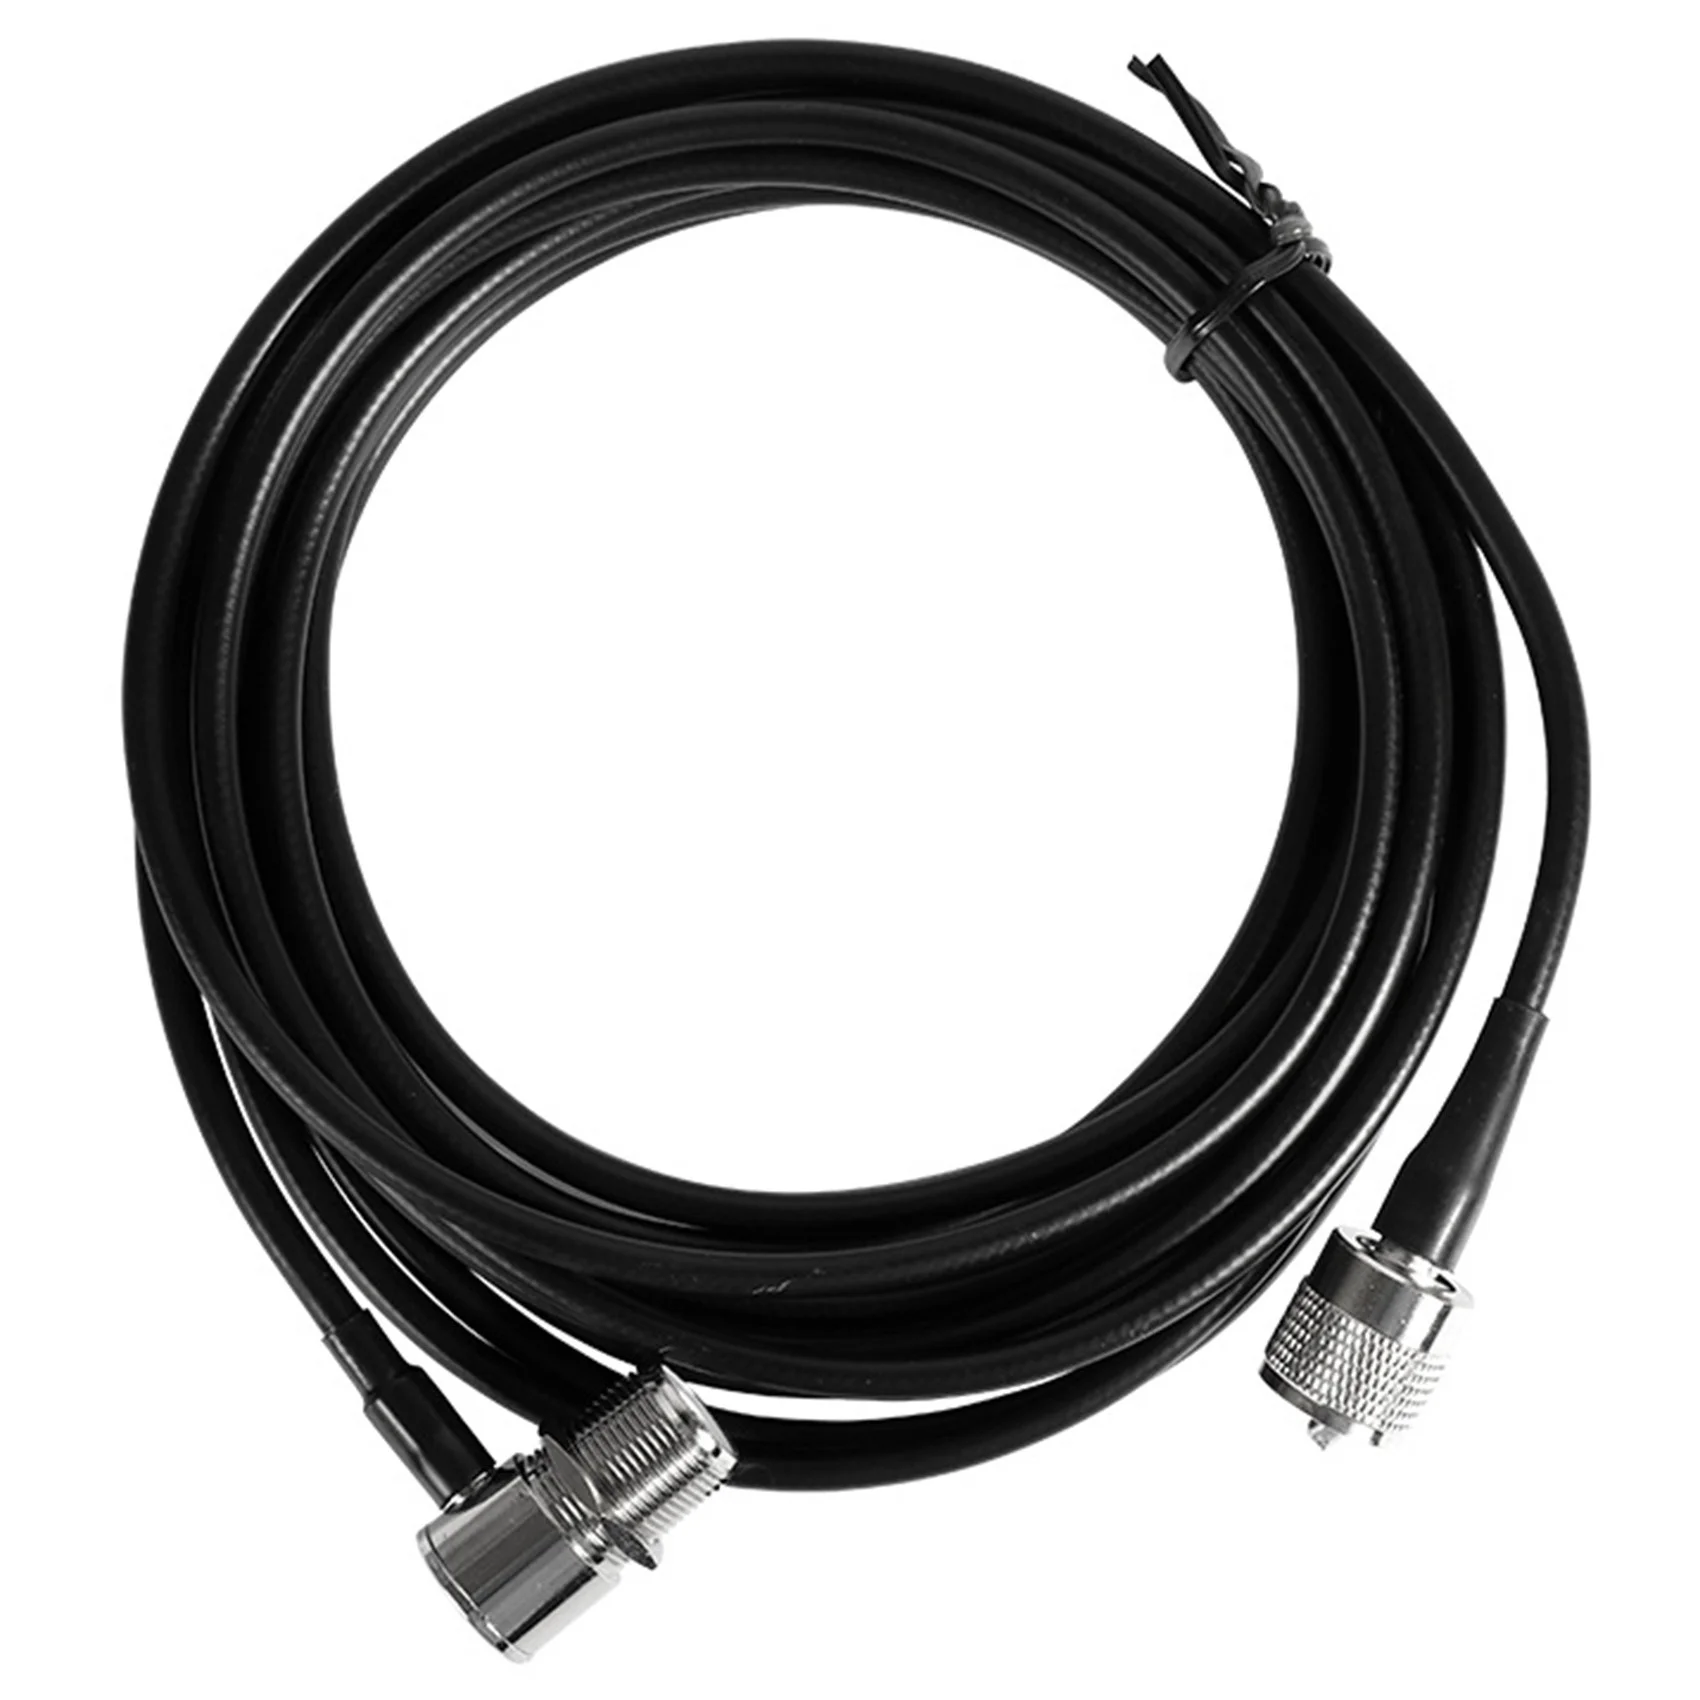 

Коаксиальный кабель RG58 RG-58 50 Ohm для автомобильной антенны 5 метров Uhf Female к Uhf Male (черный)